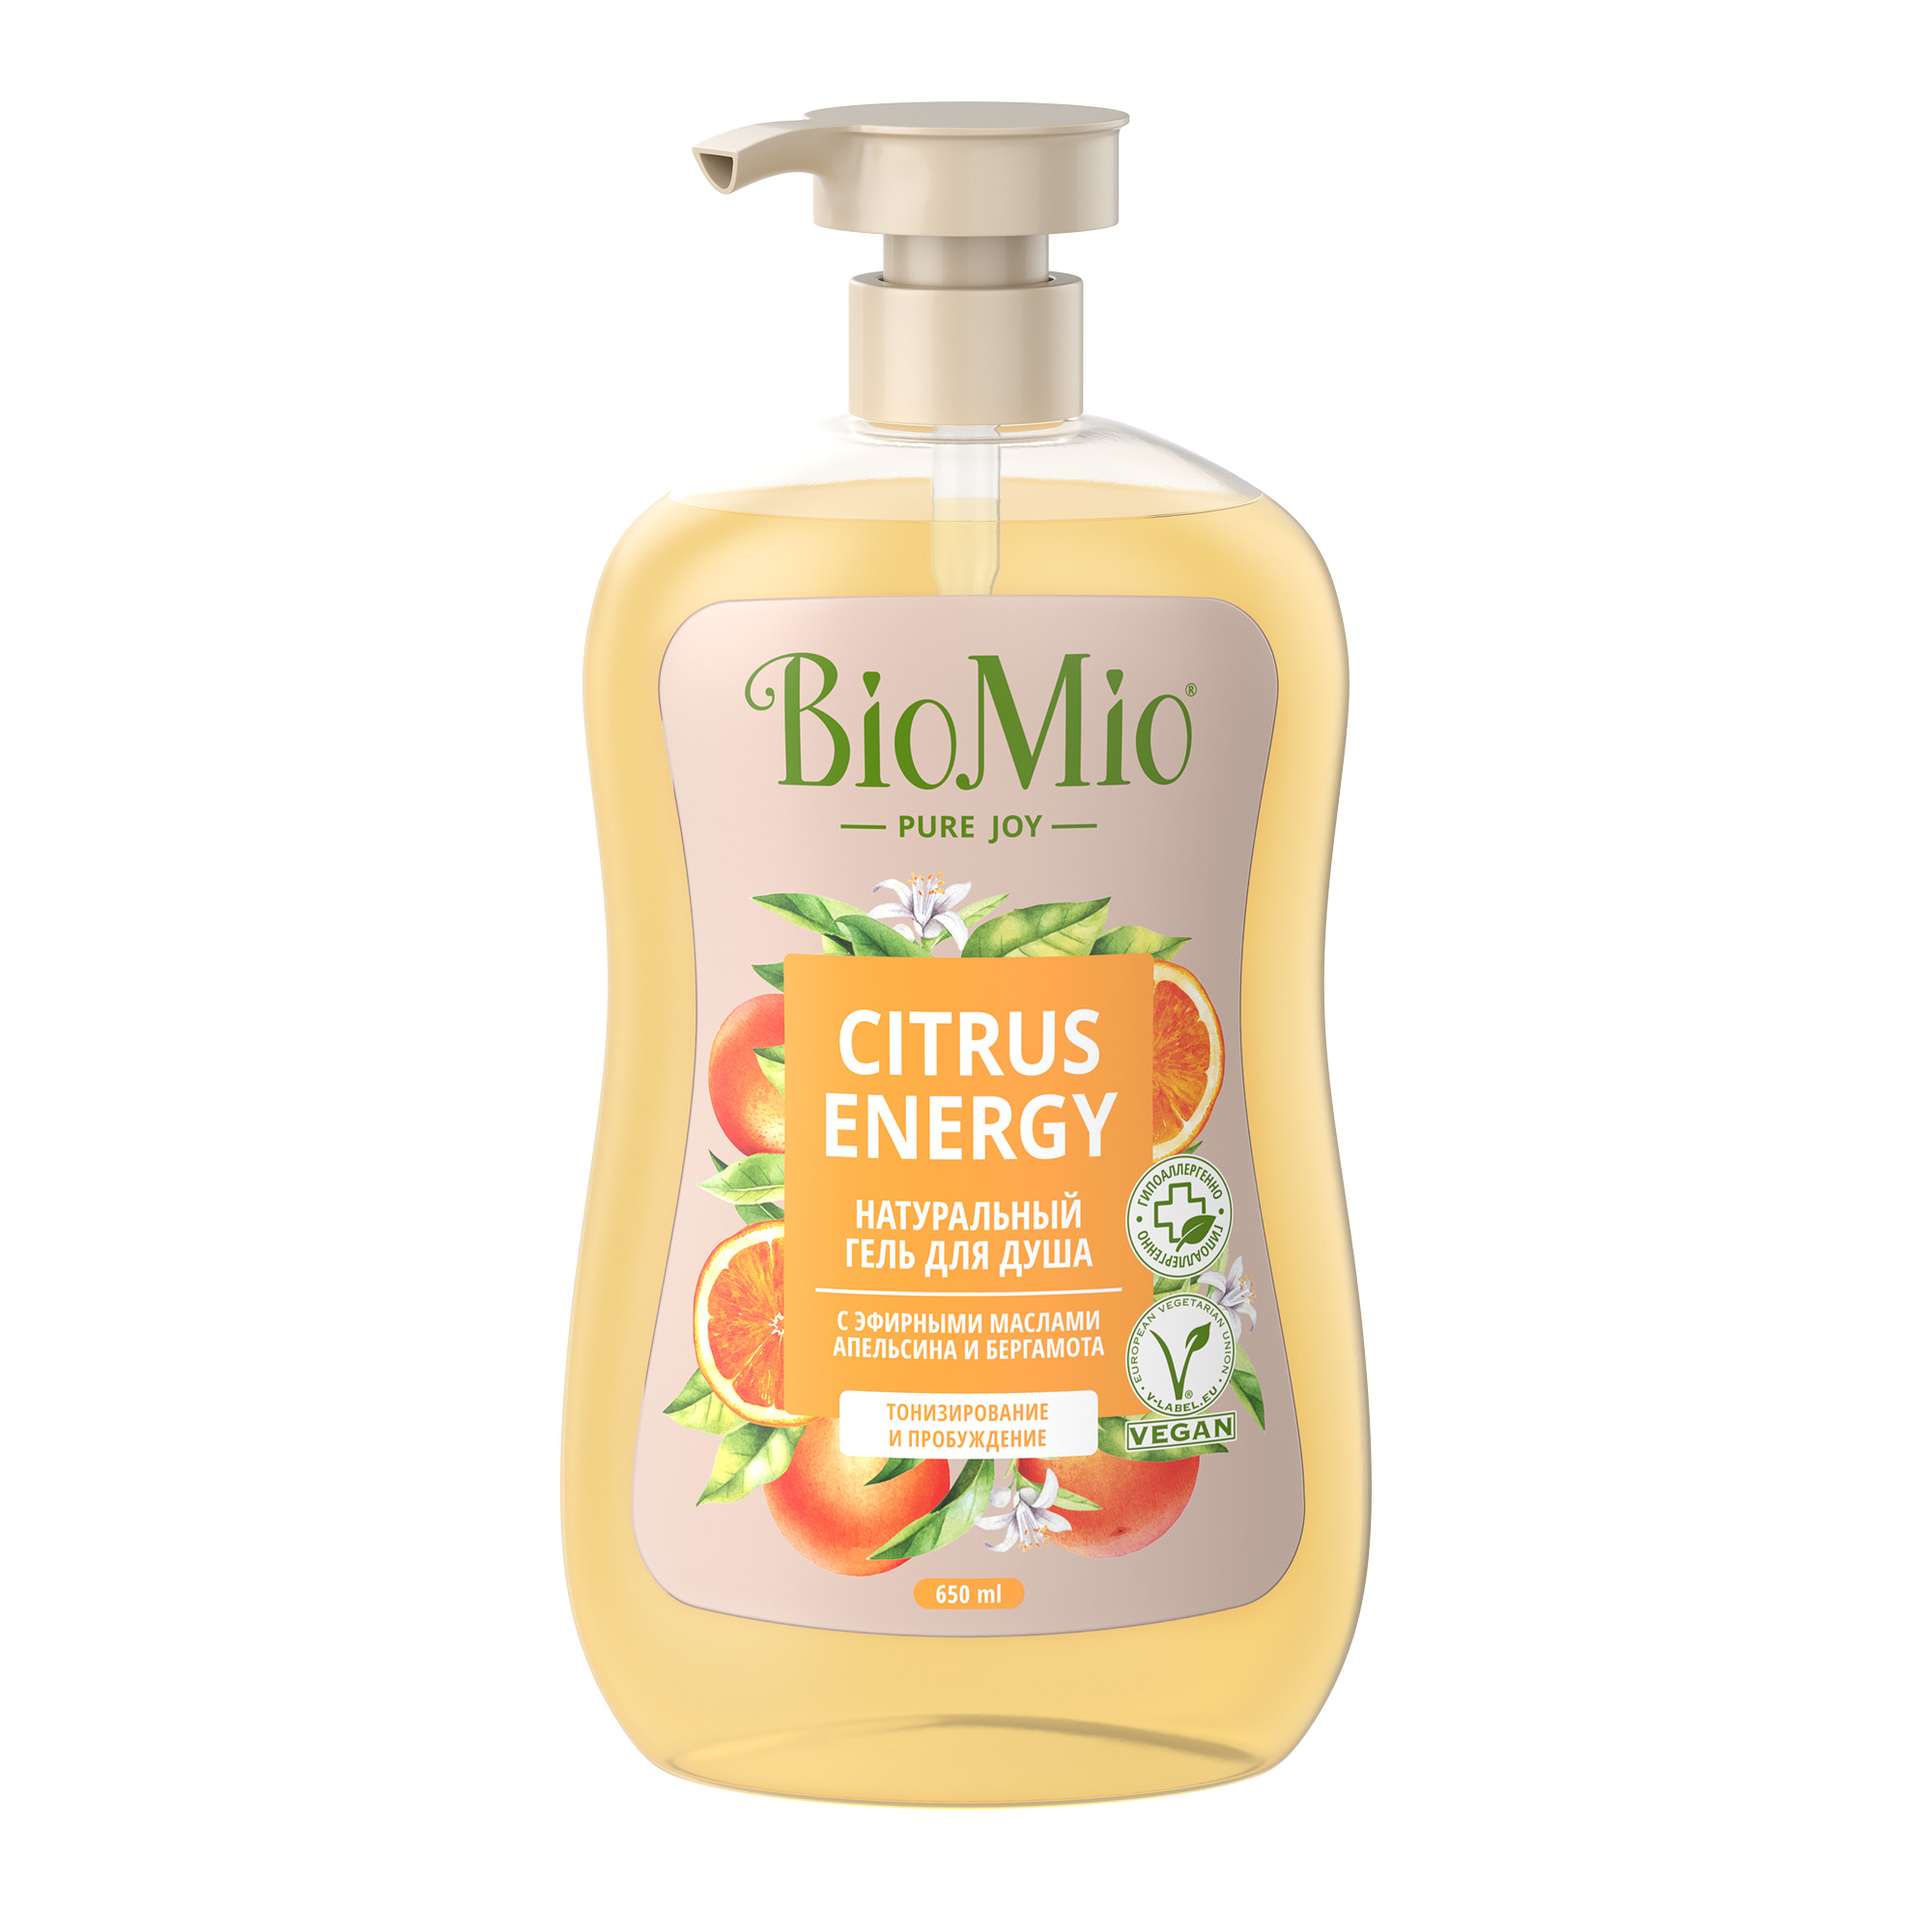 Купить Натуральный гель для душа BIO MIO с эфирными маслами апельсина и бергамота 650 мл, BioMio